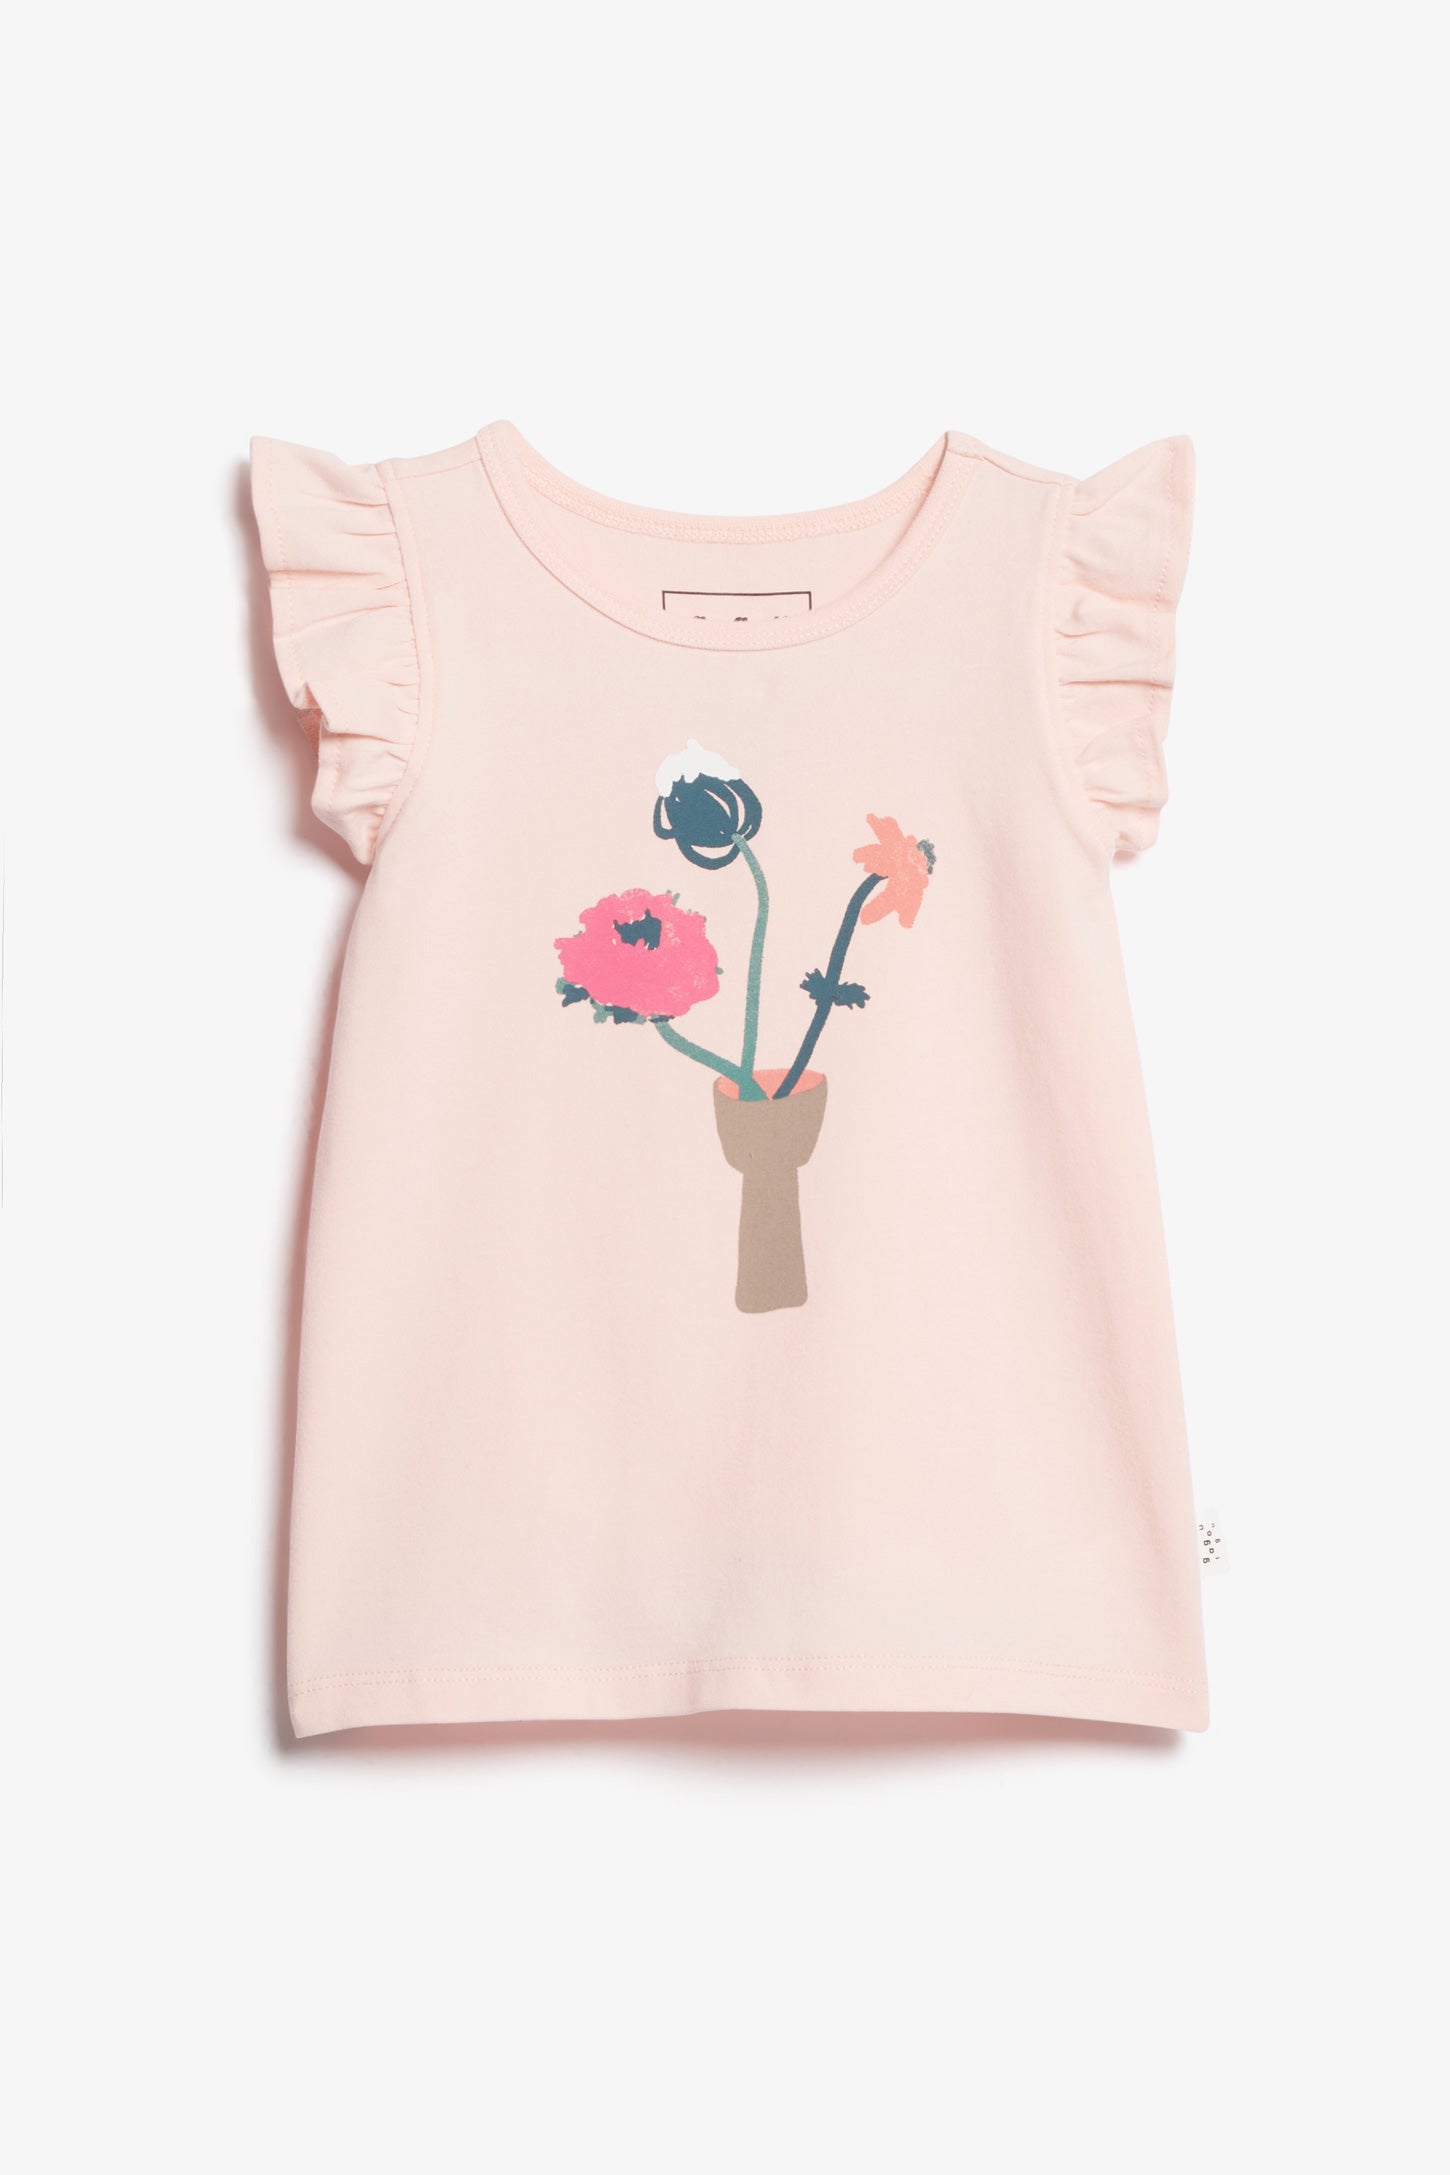 T-shirt manches volants en coton, 2T-3T - Bébé fille && ROSE PALE